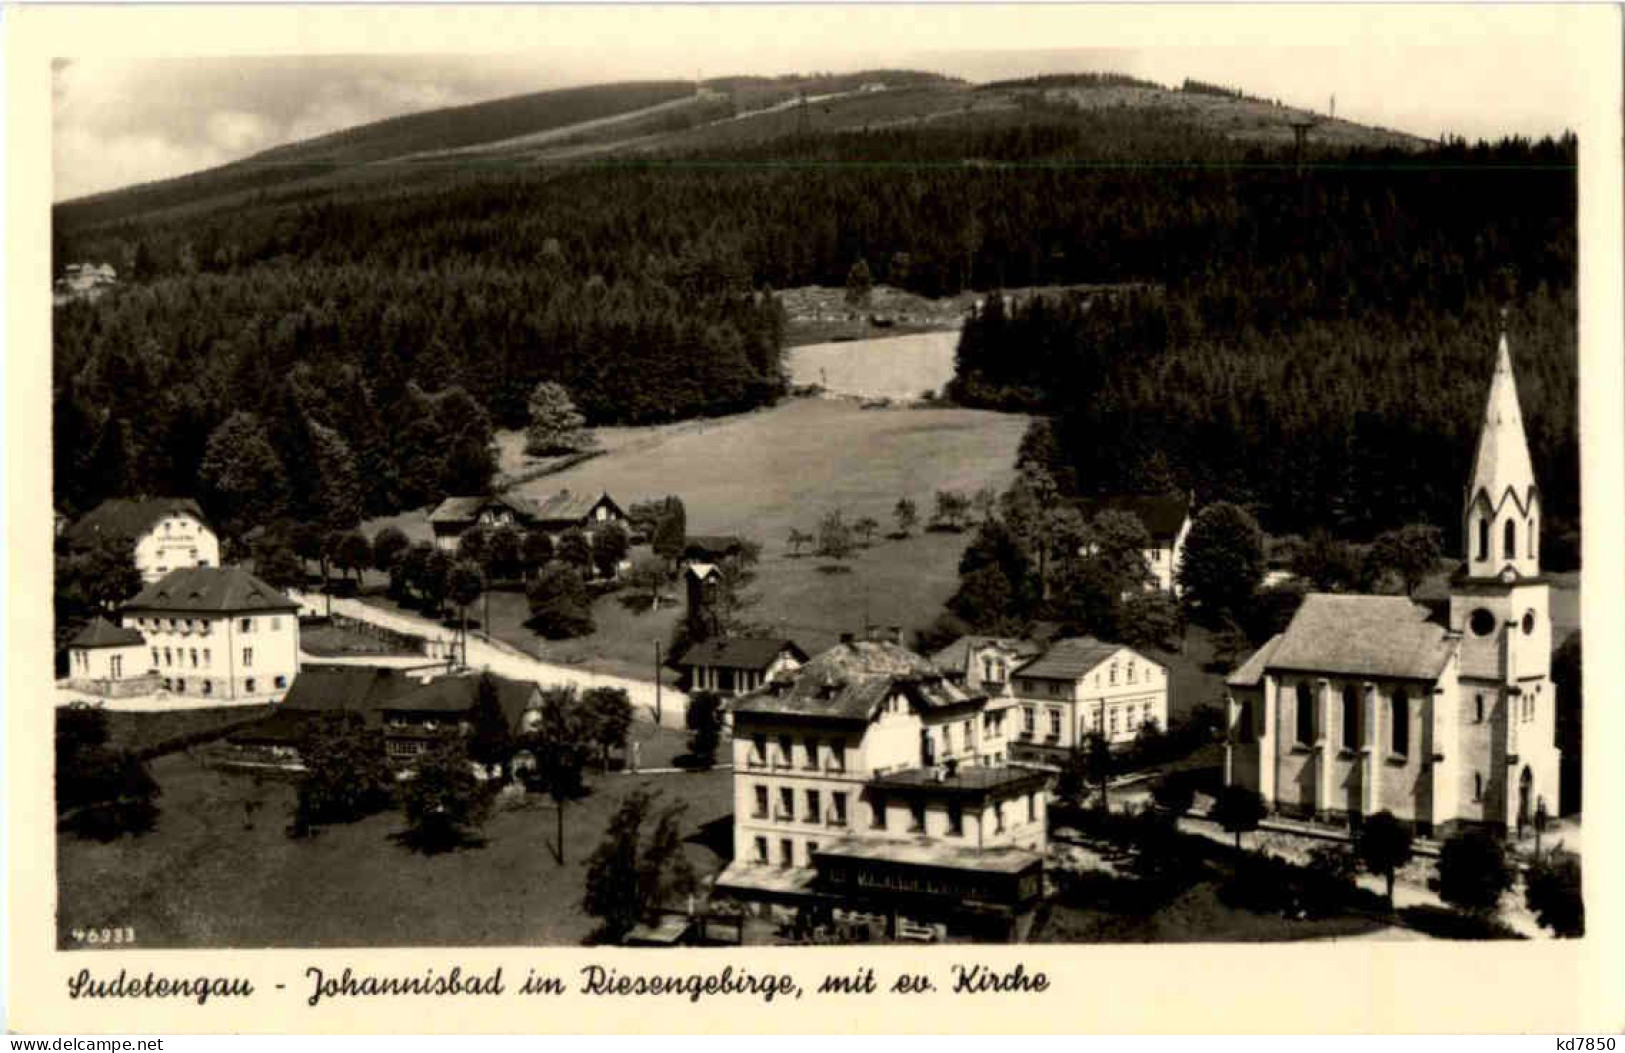 Johannisbad - Sudetengau - Sudeten